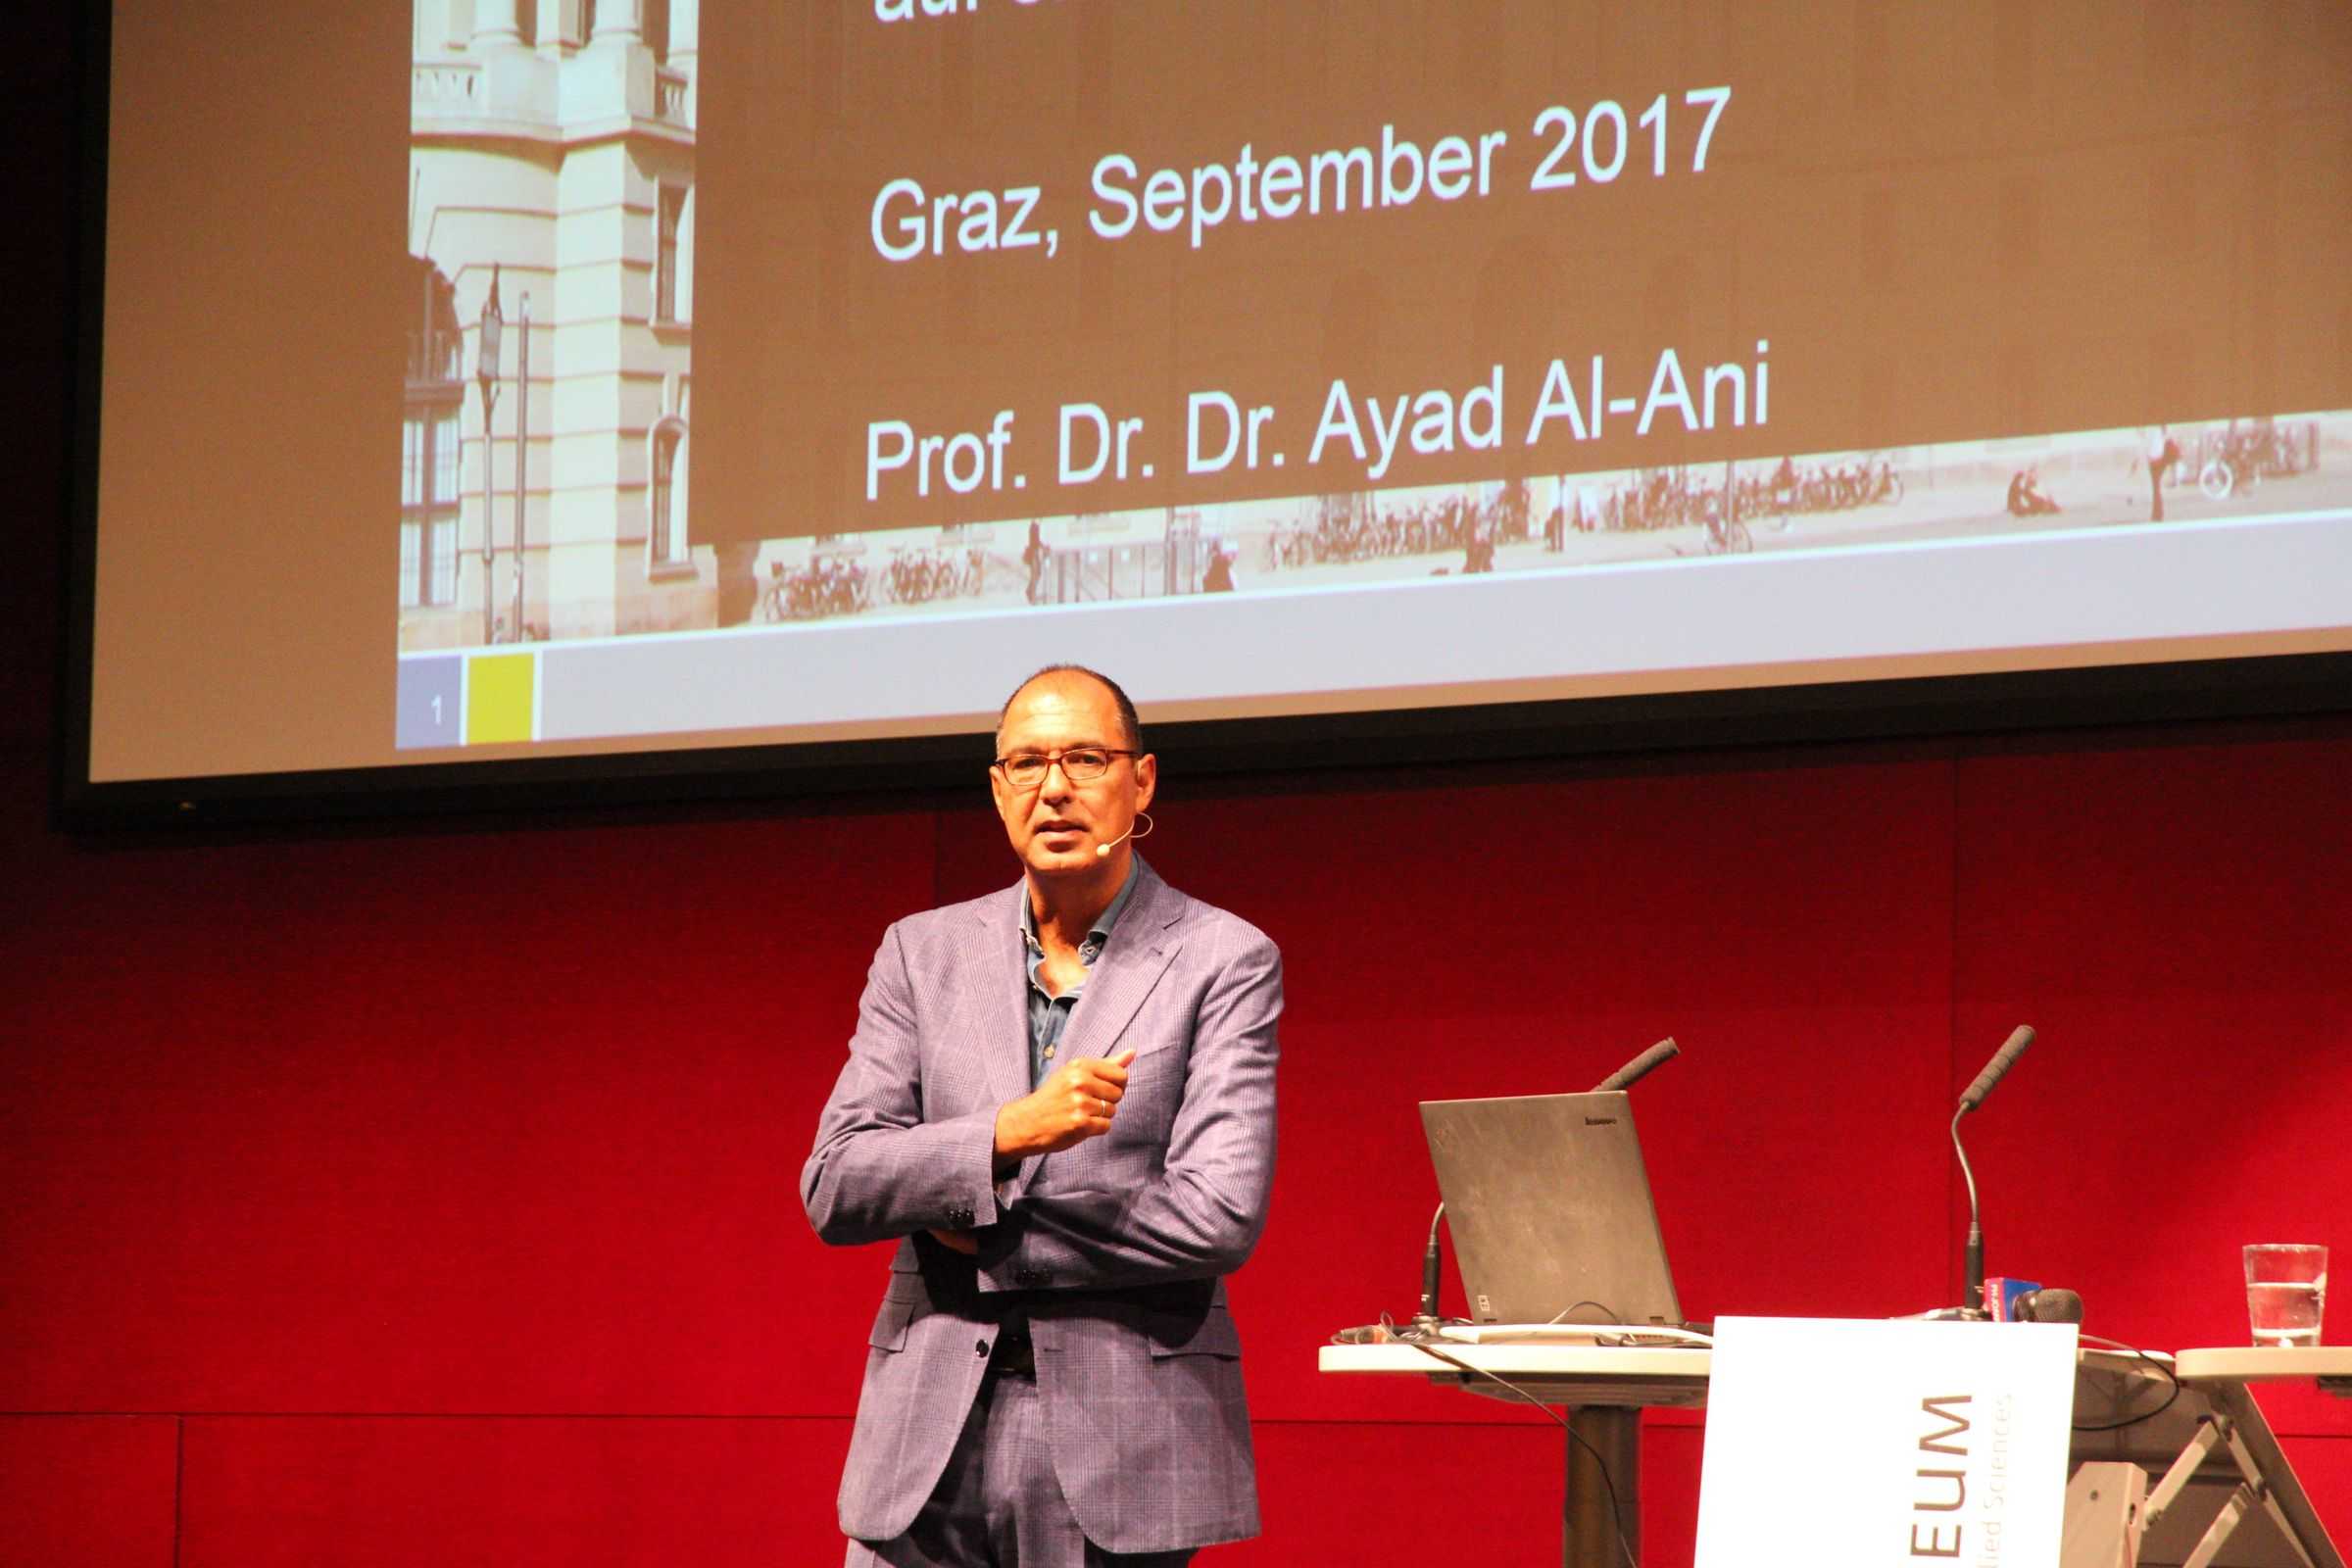 Foto von Ayad Al-Ani mit Präsentation im Hintergrund.